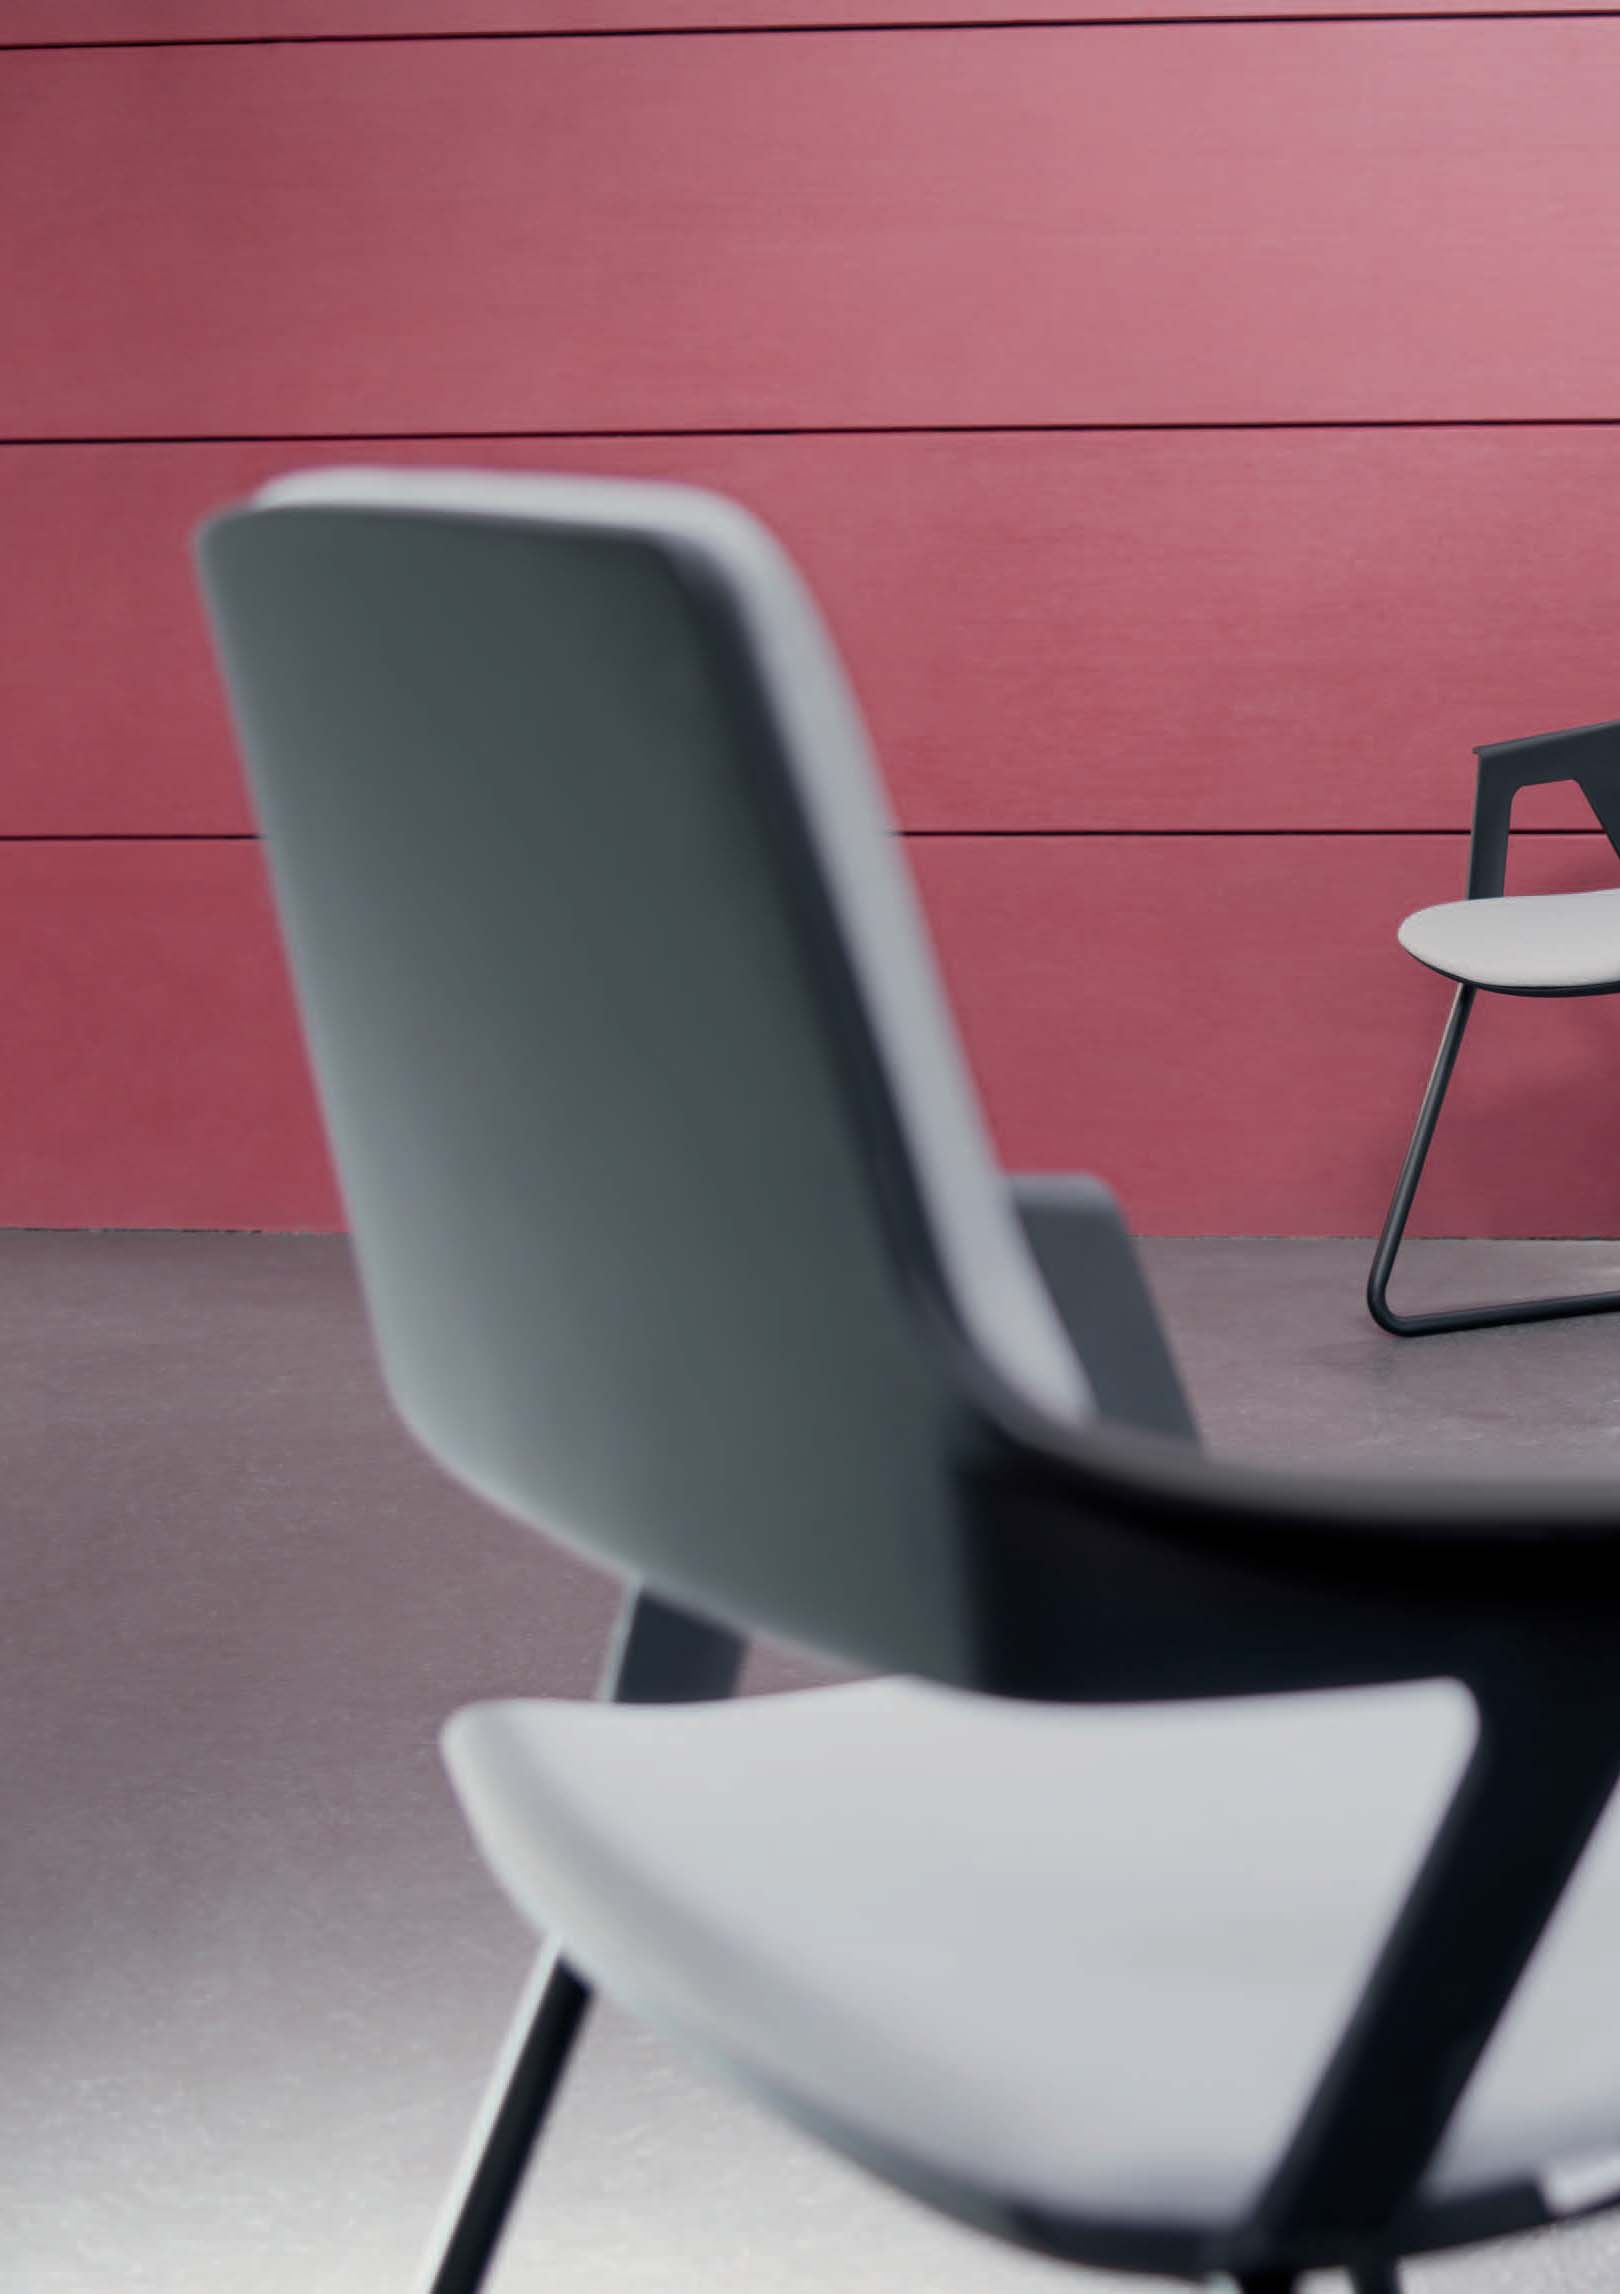 MOVYis3 ist nicht nur ein Stuhl, sondern der Name einer erfreulich vielseitigen Familie, deren verbindendes Merkmal ihr leichtes und transparentes Design ist.